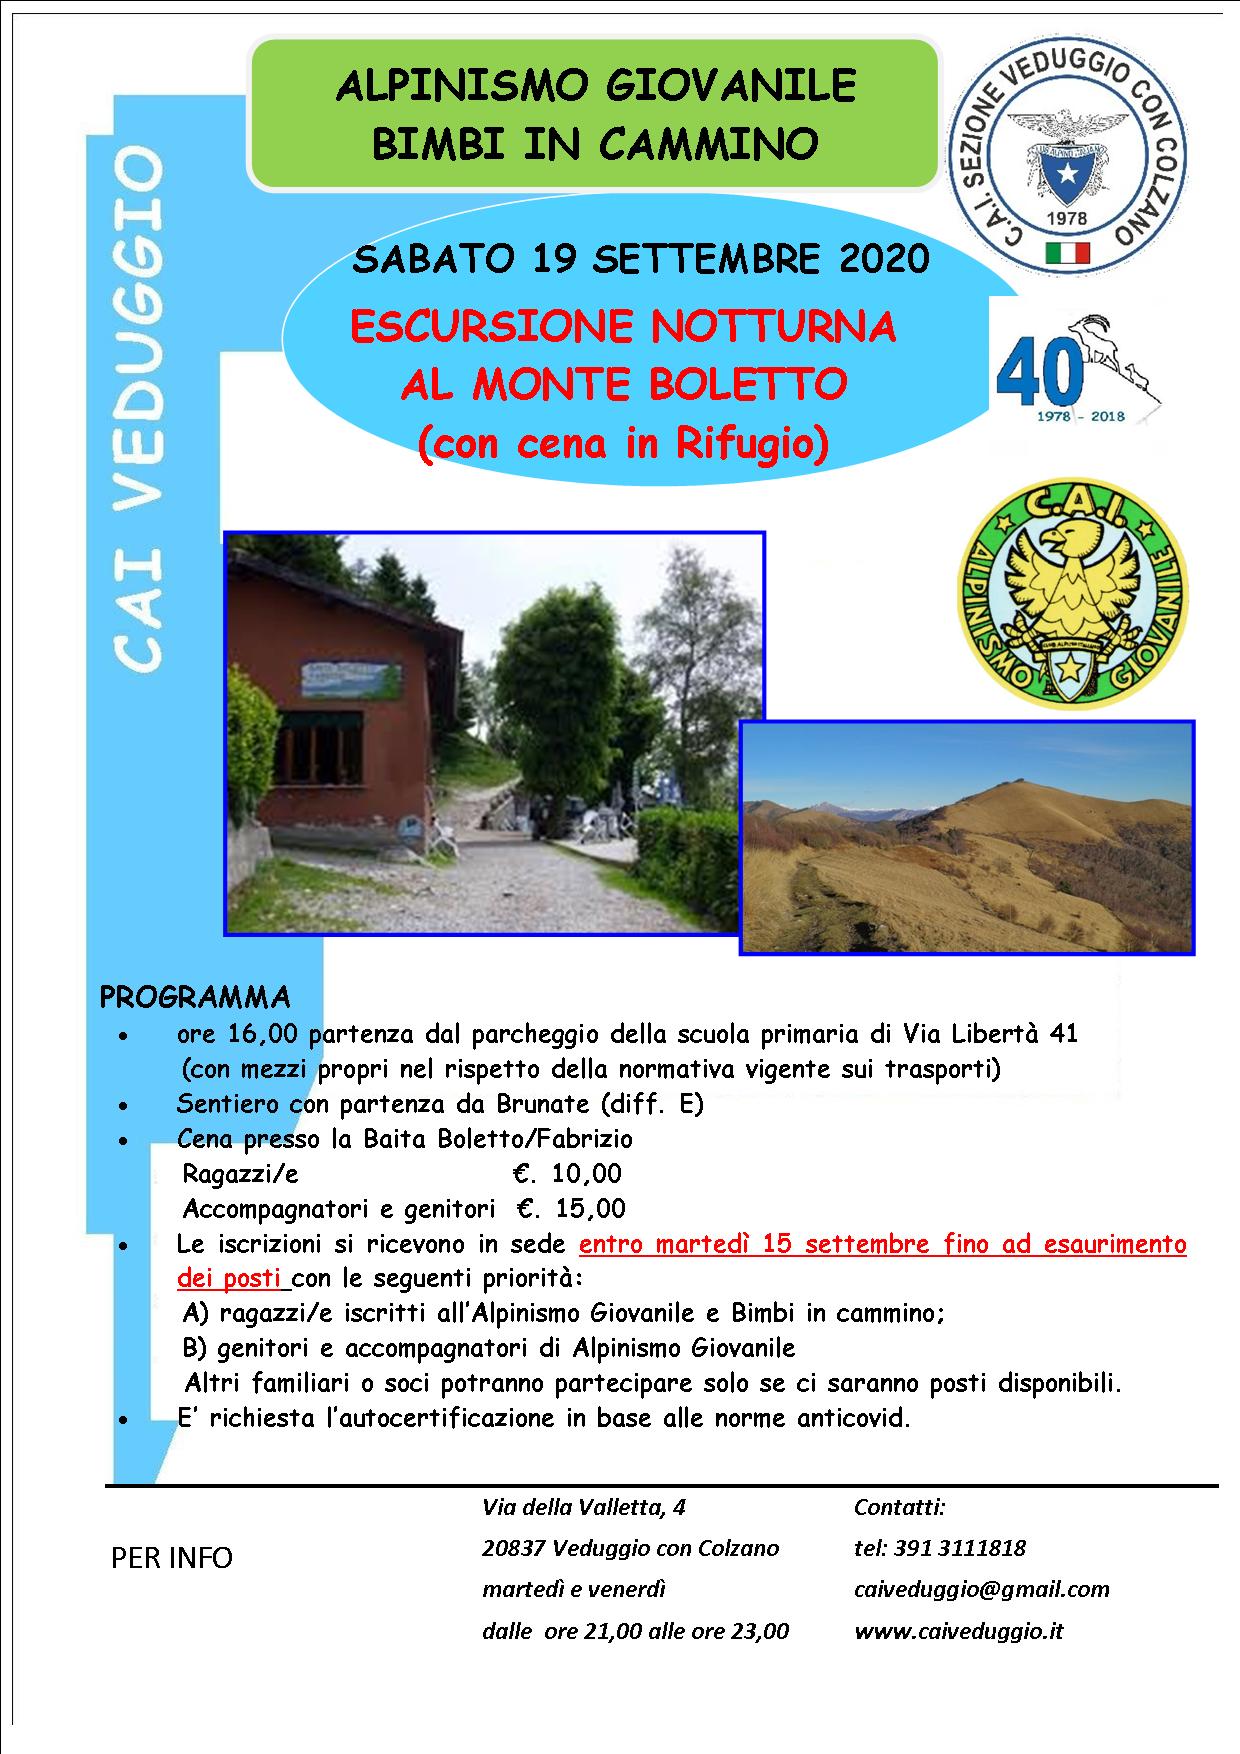 Sabato 19 settembre 2020- Escursione notturna al Monte Boletto